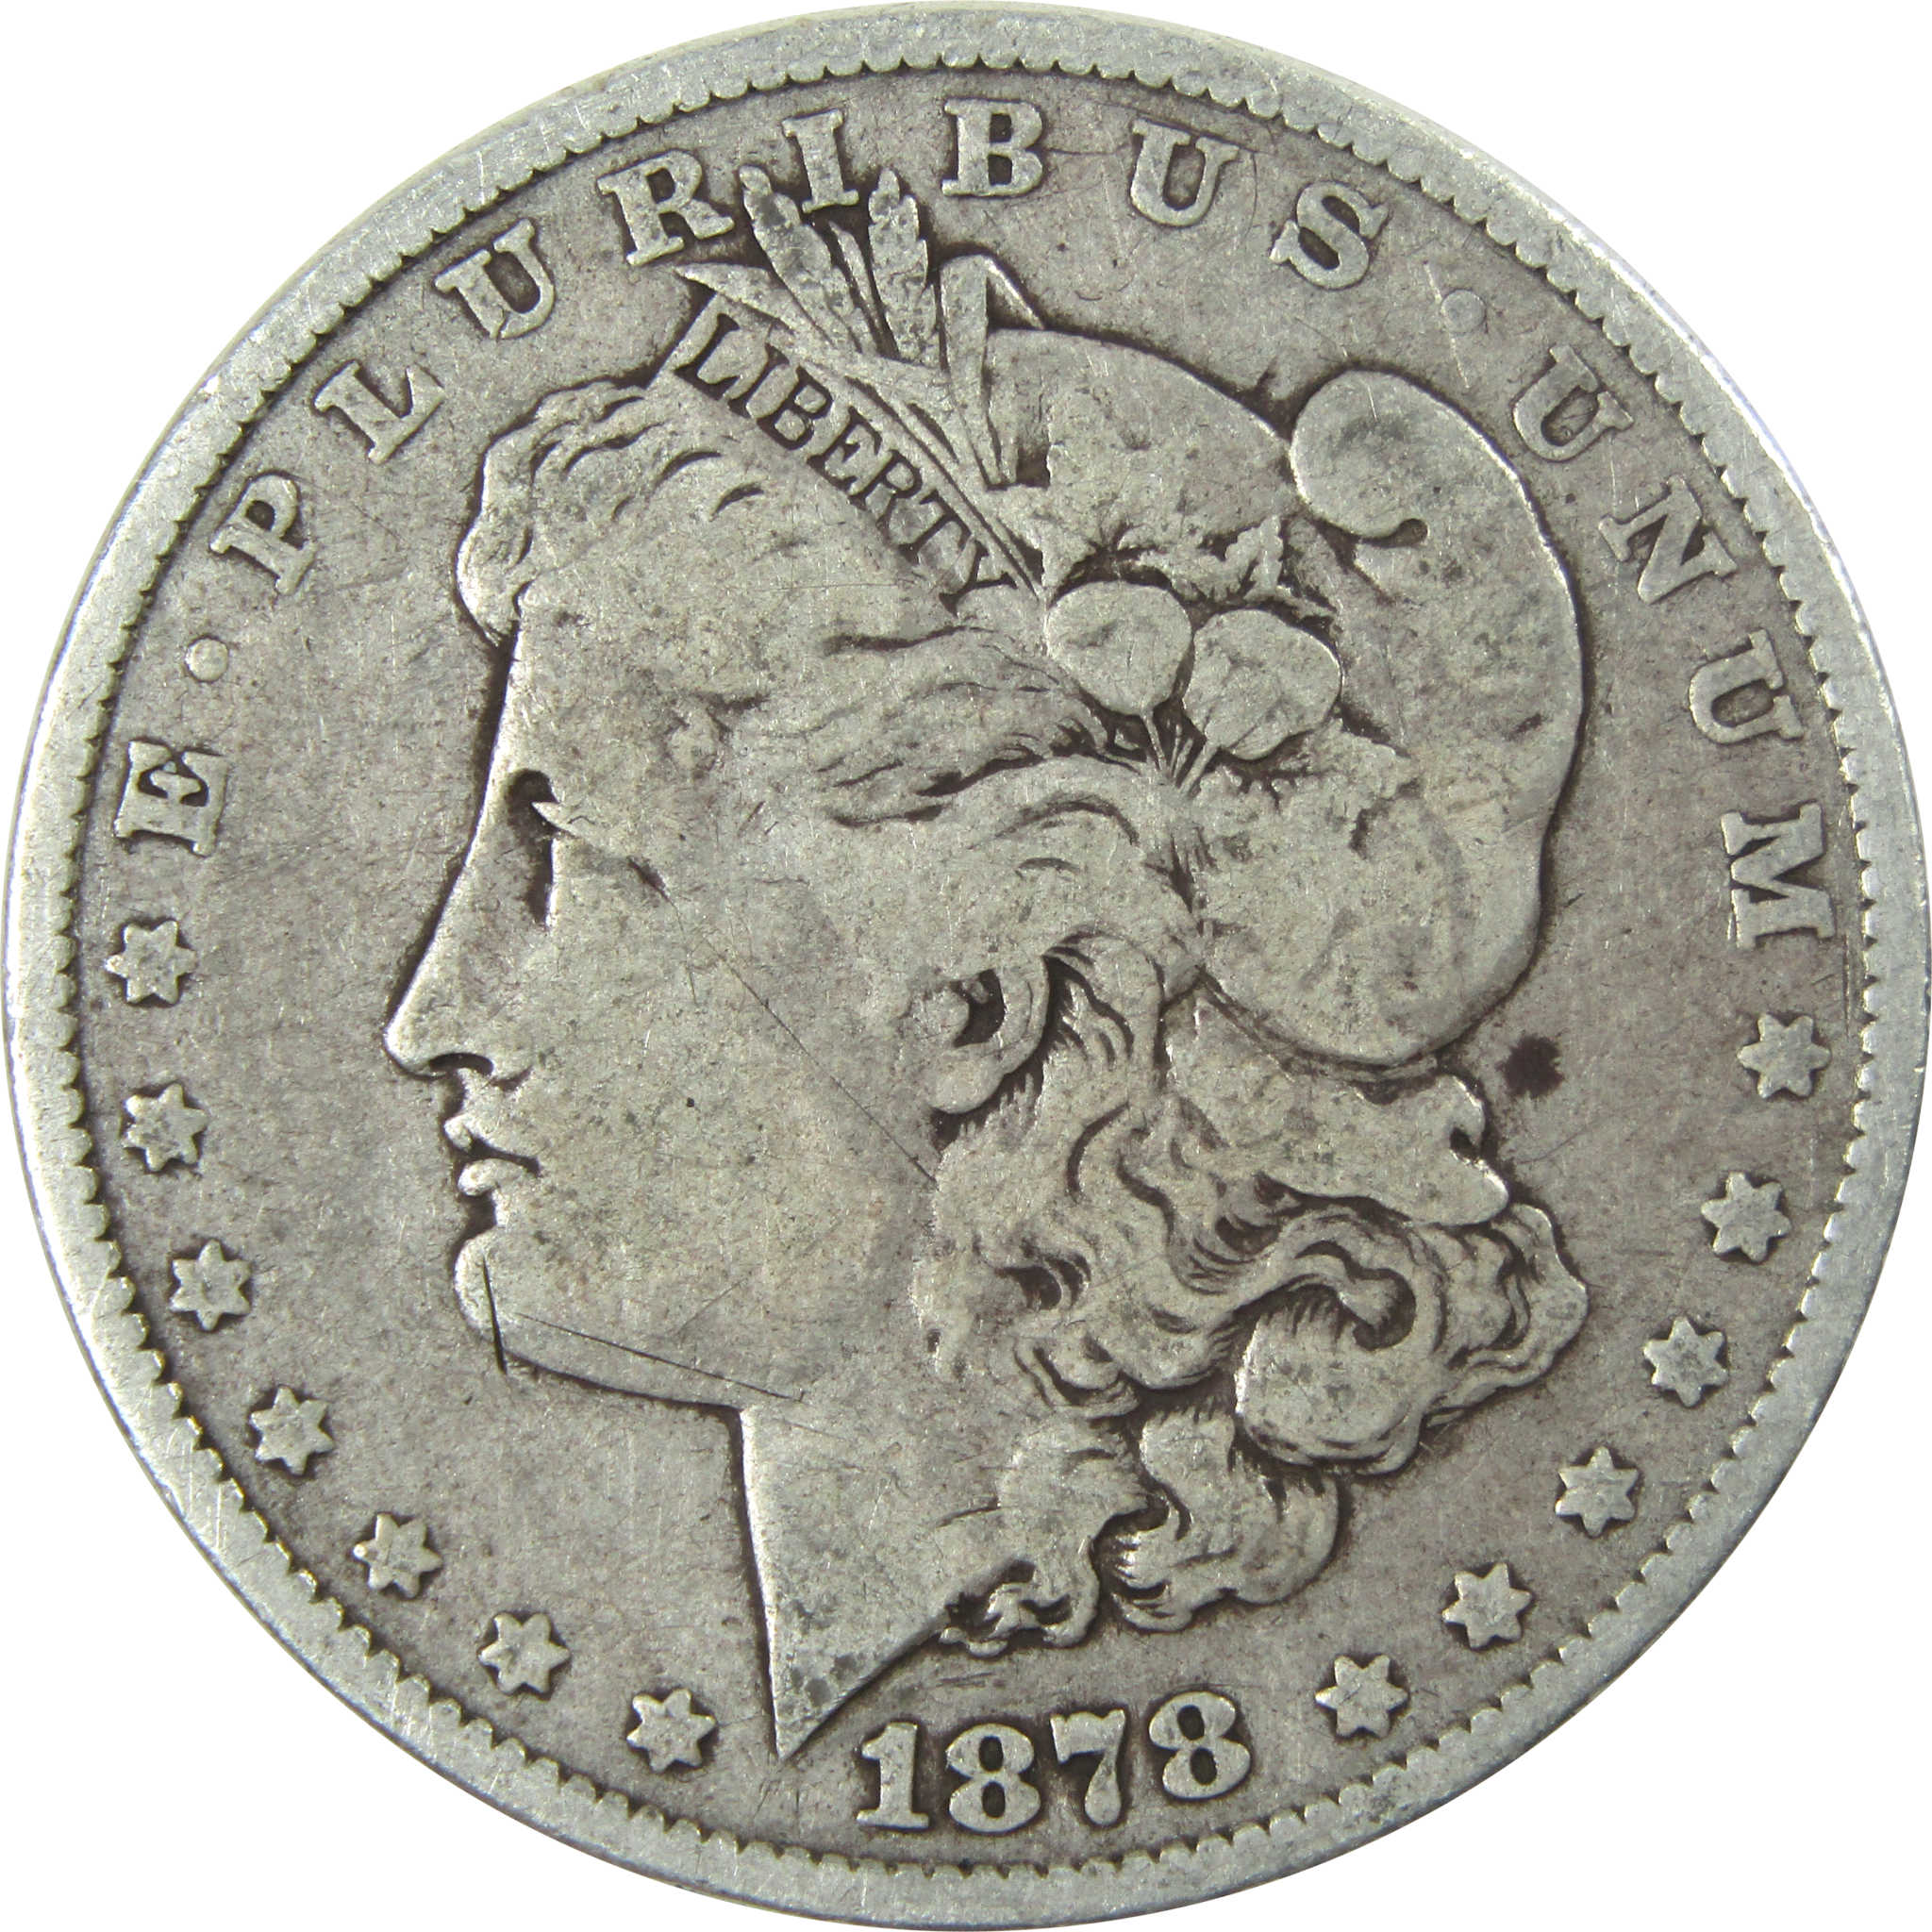 1878 7TF Rev 79 Morgan Dollar VG Very Good Silver $1 Coin SKU:I13908 - Morgan coin - Morgan silver dollar - Morgan silver dollar for sale - Profile Coins &amp; Collectibles